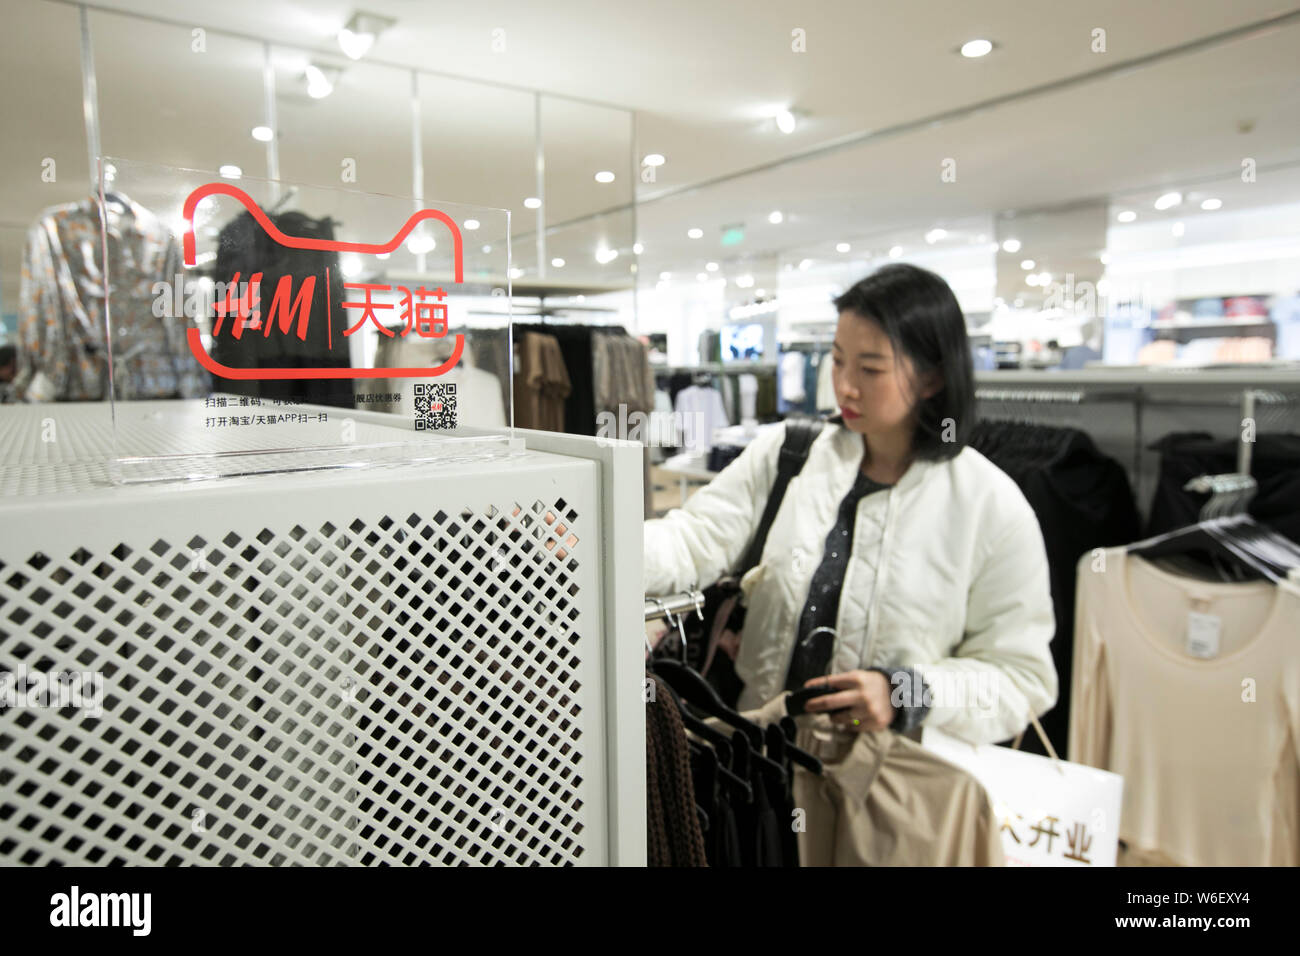 Un de tienda de moda H&M y el sitio de compras online Tmall.com del gigante chino del comercio electrónico Alibaba Group es representada en un tienda en Shangha Fotografía de